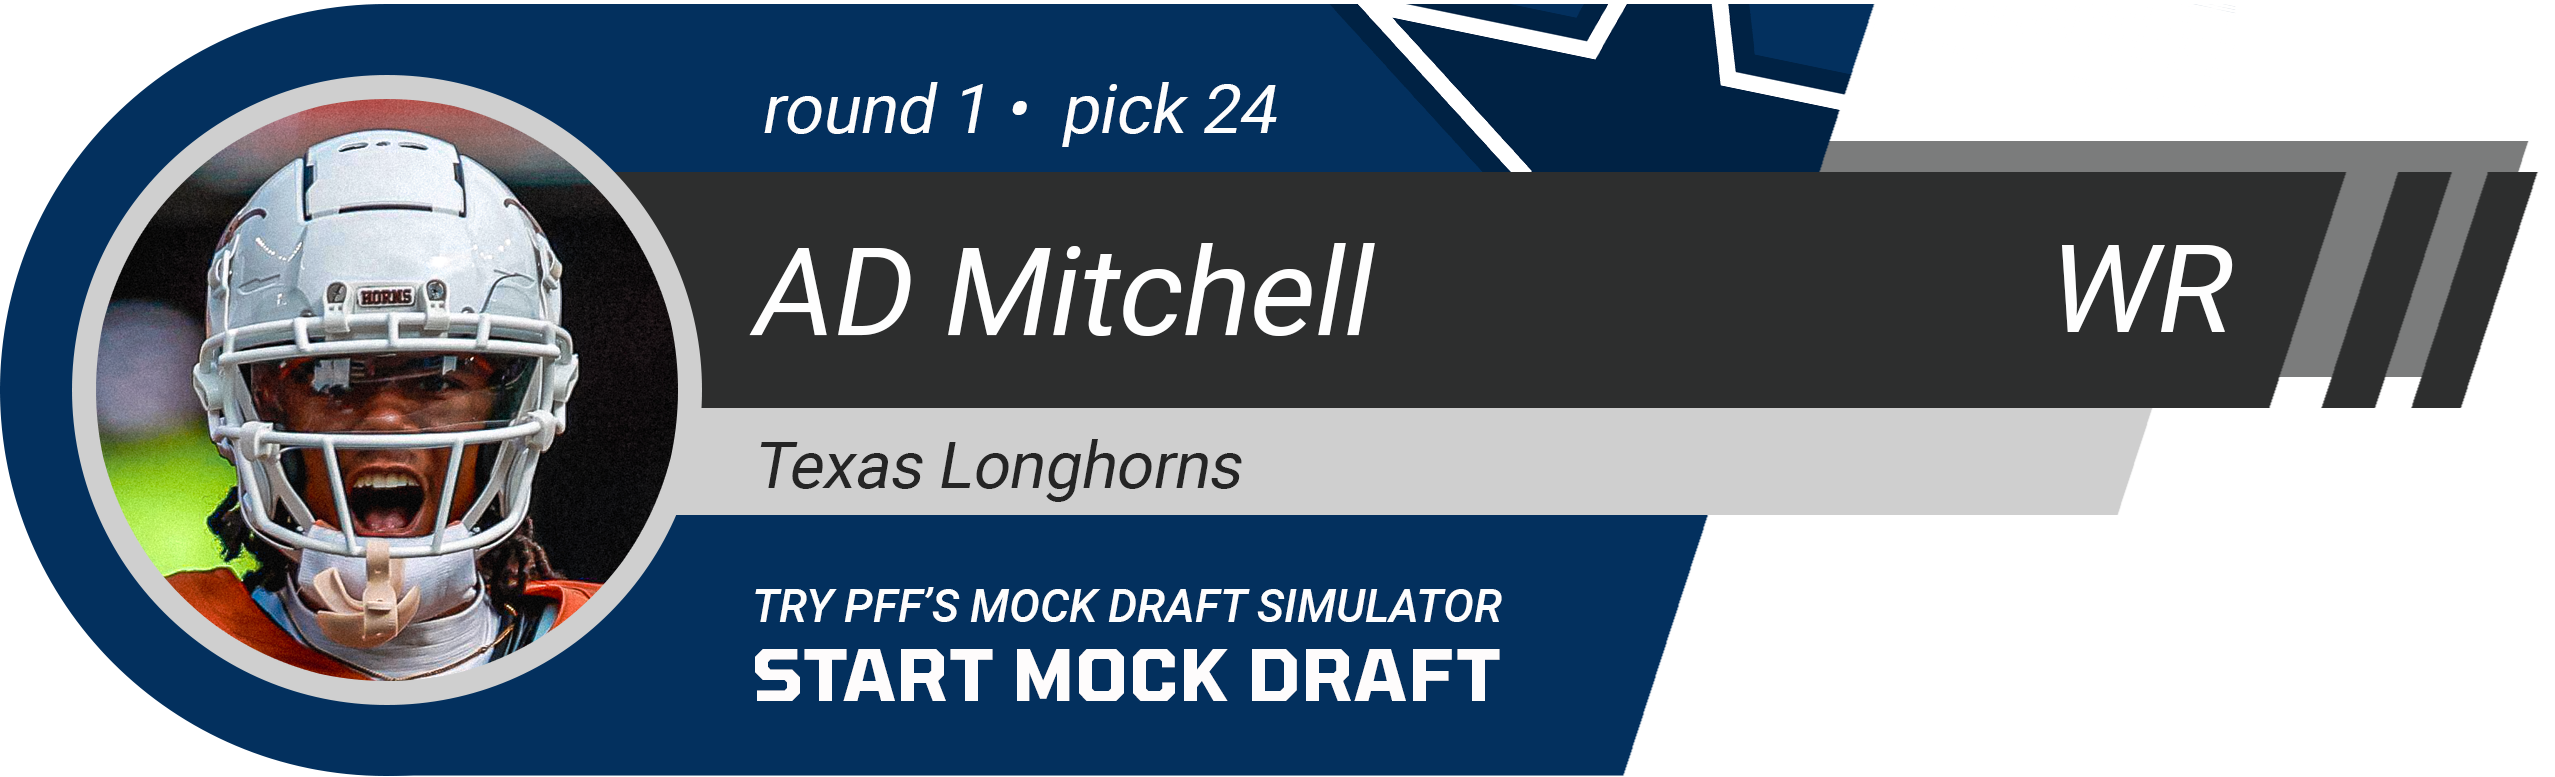 24. Dallas Cowboys: WR AD Mitchell, Texas